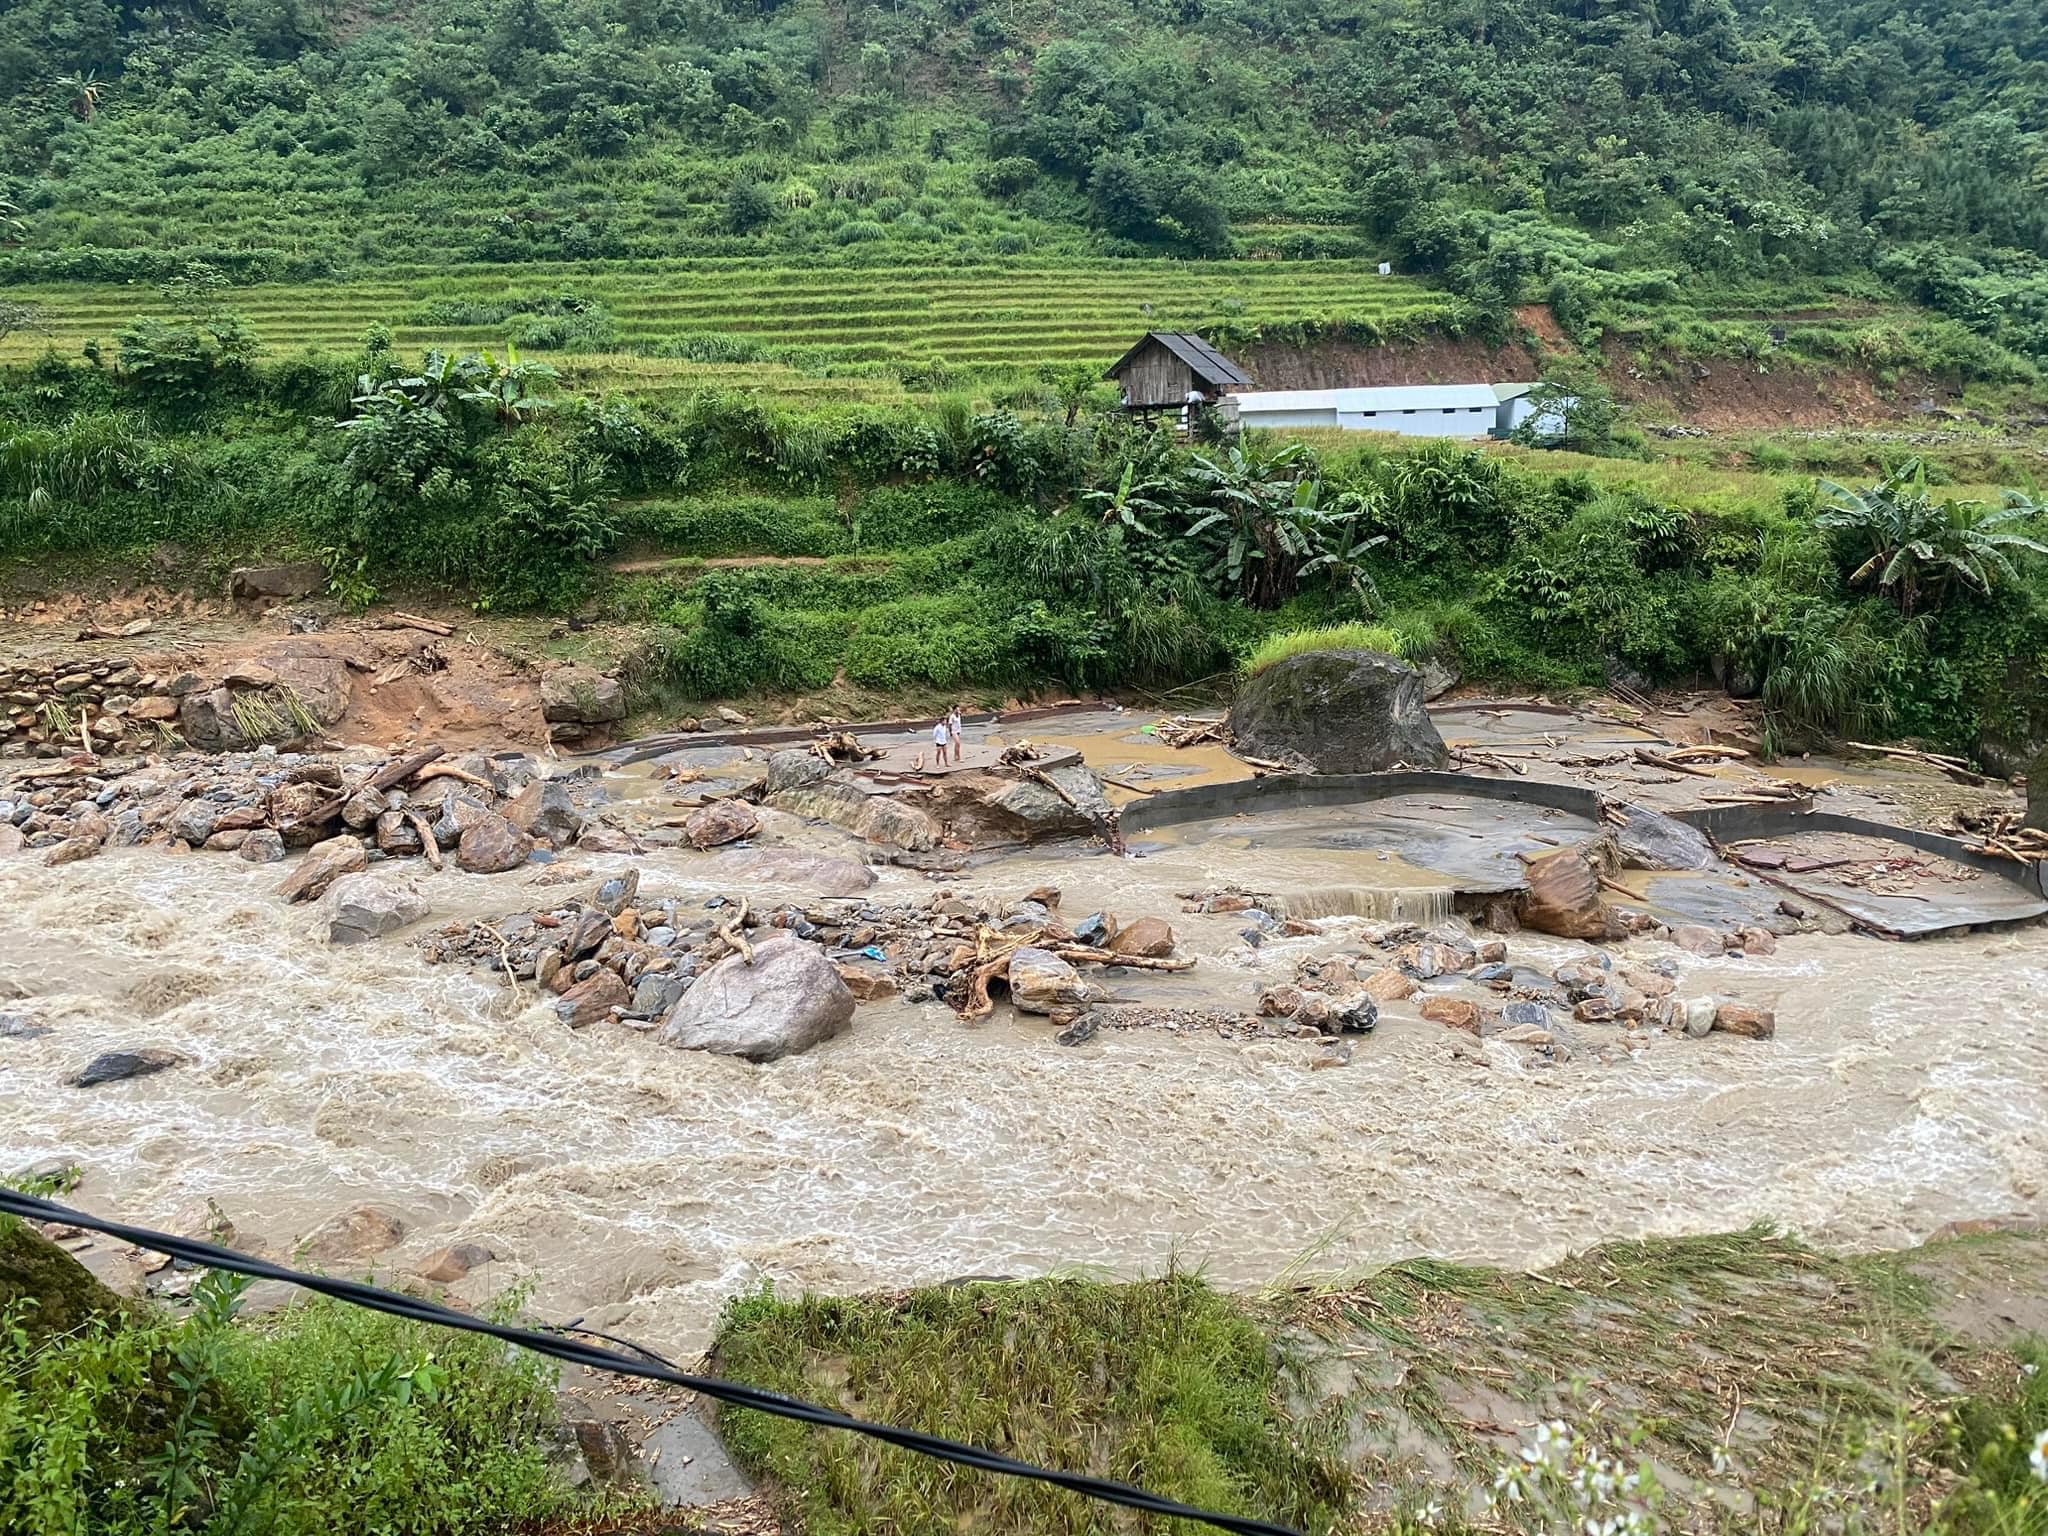 Cảnh tan hoang sau trận lũ quét khiến nhiều người chết và mất tích ở Lào Cai - 1